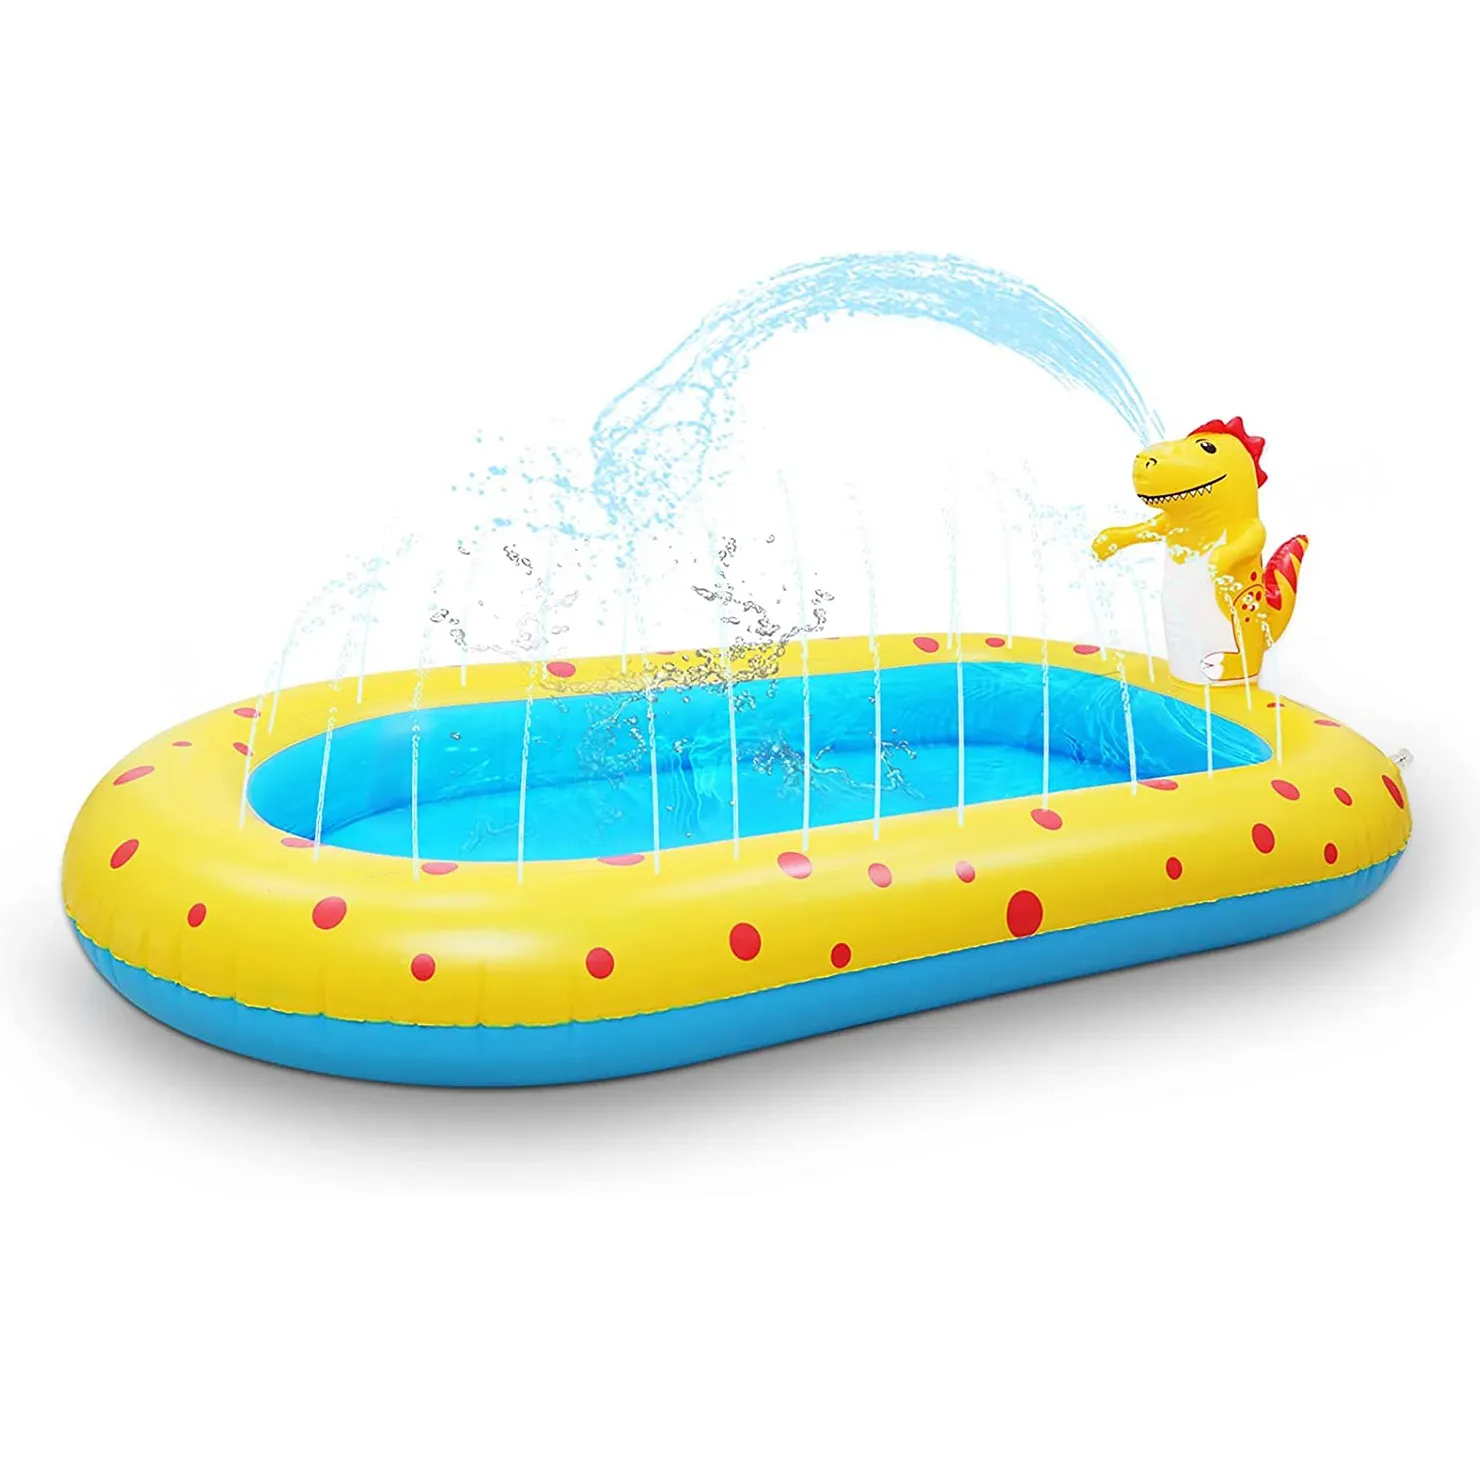 Newest 3 in 1Inflatable Dinosaur Swimming Pool,Summer Outdoor Garden Sprinkler paddling Pool Sprinkle Splash Water Play for kids